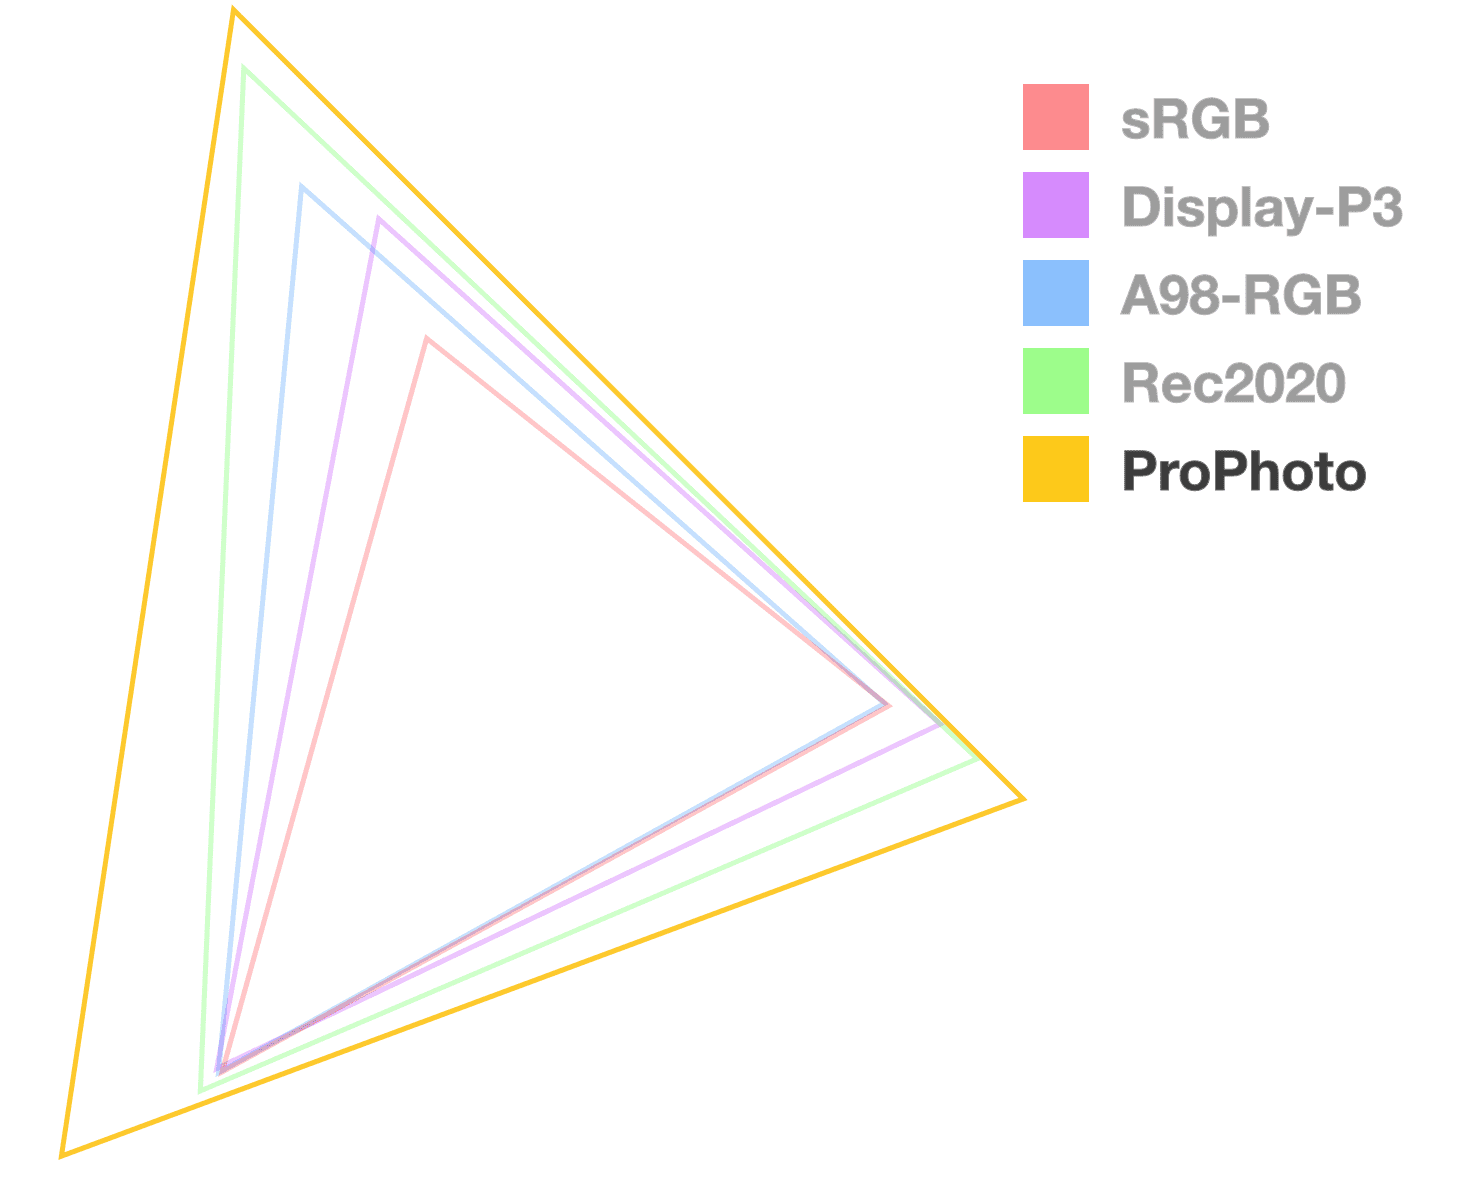 משולש ProPhoto הוא היחיד אטום לחלוטין, שעוזר להמחיש את הגודל של הסולם. נראה שזה הגדול ביותר.